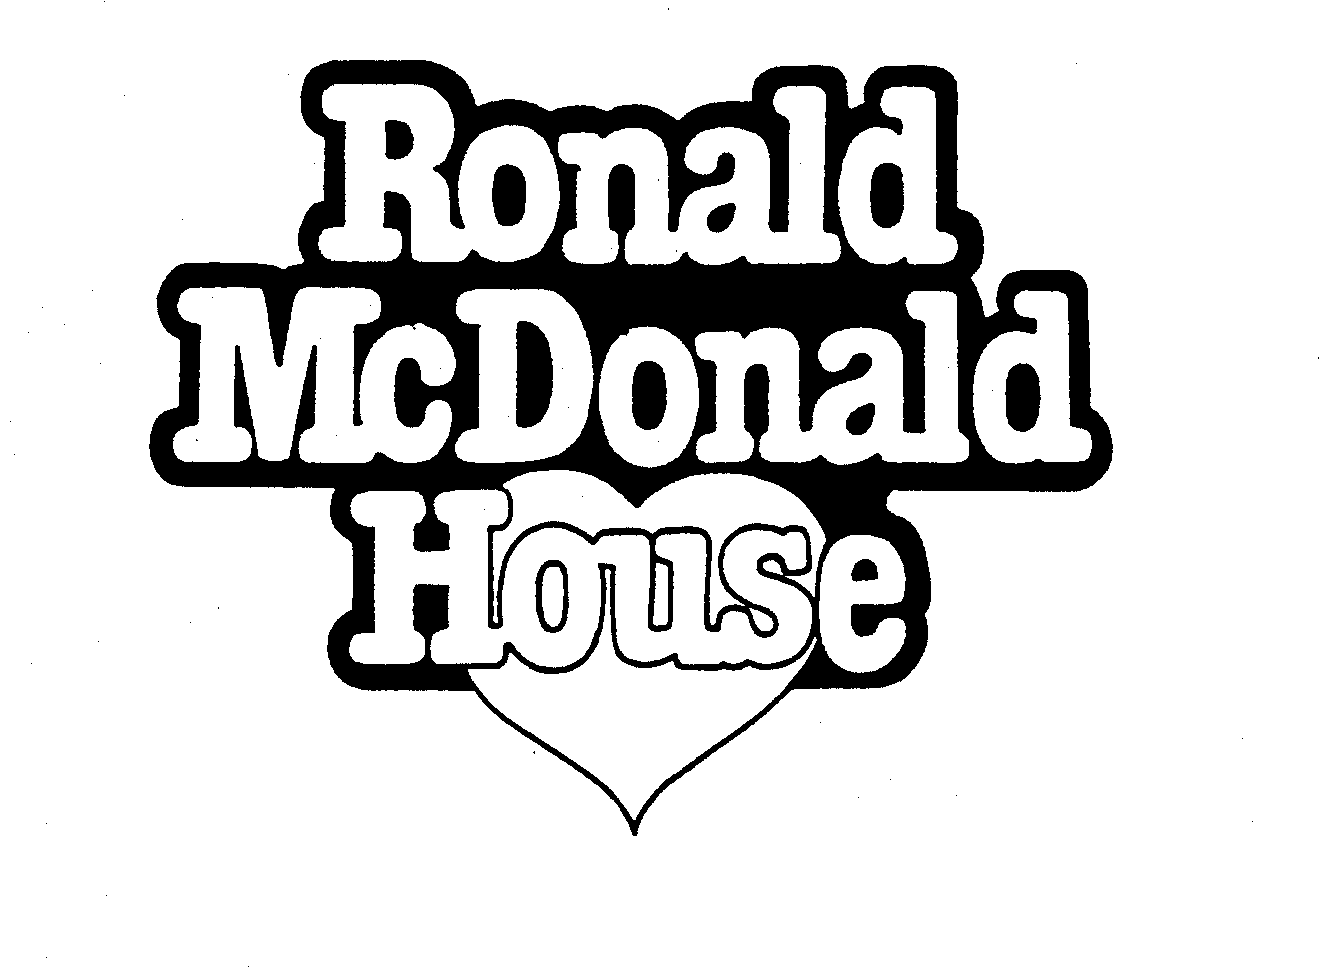 RONALD MCDONALD HOUSE